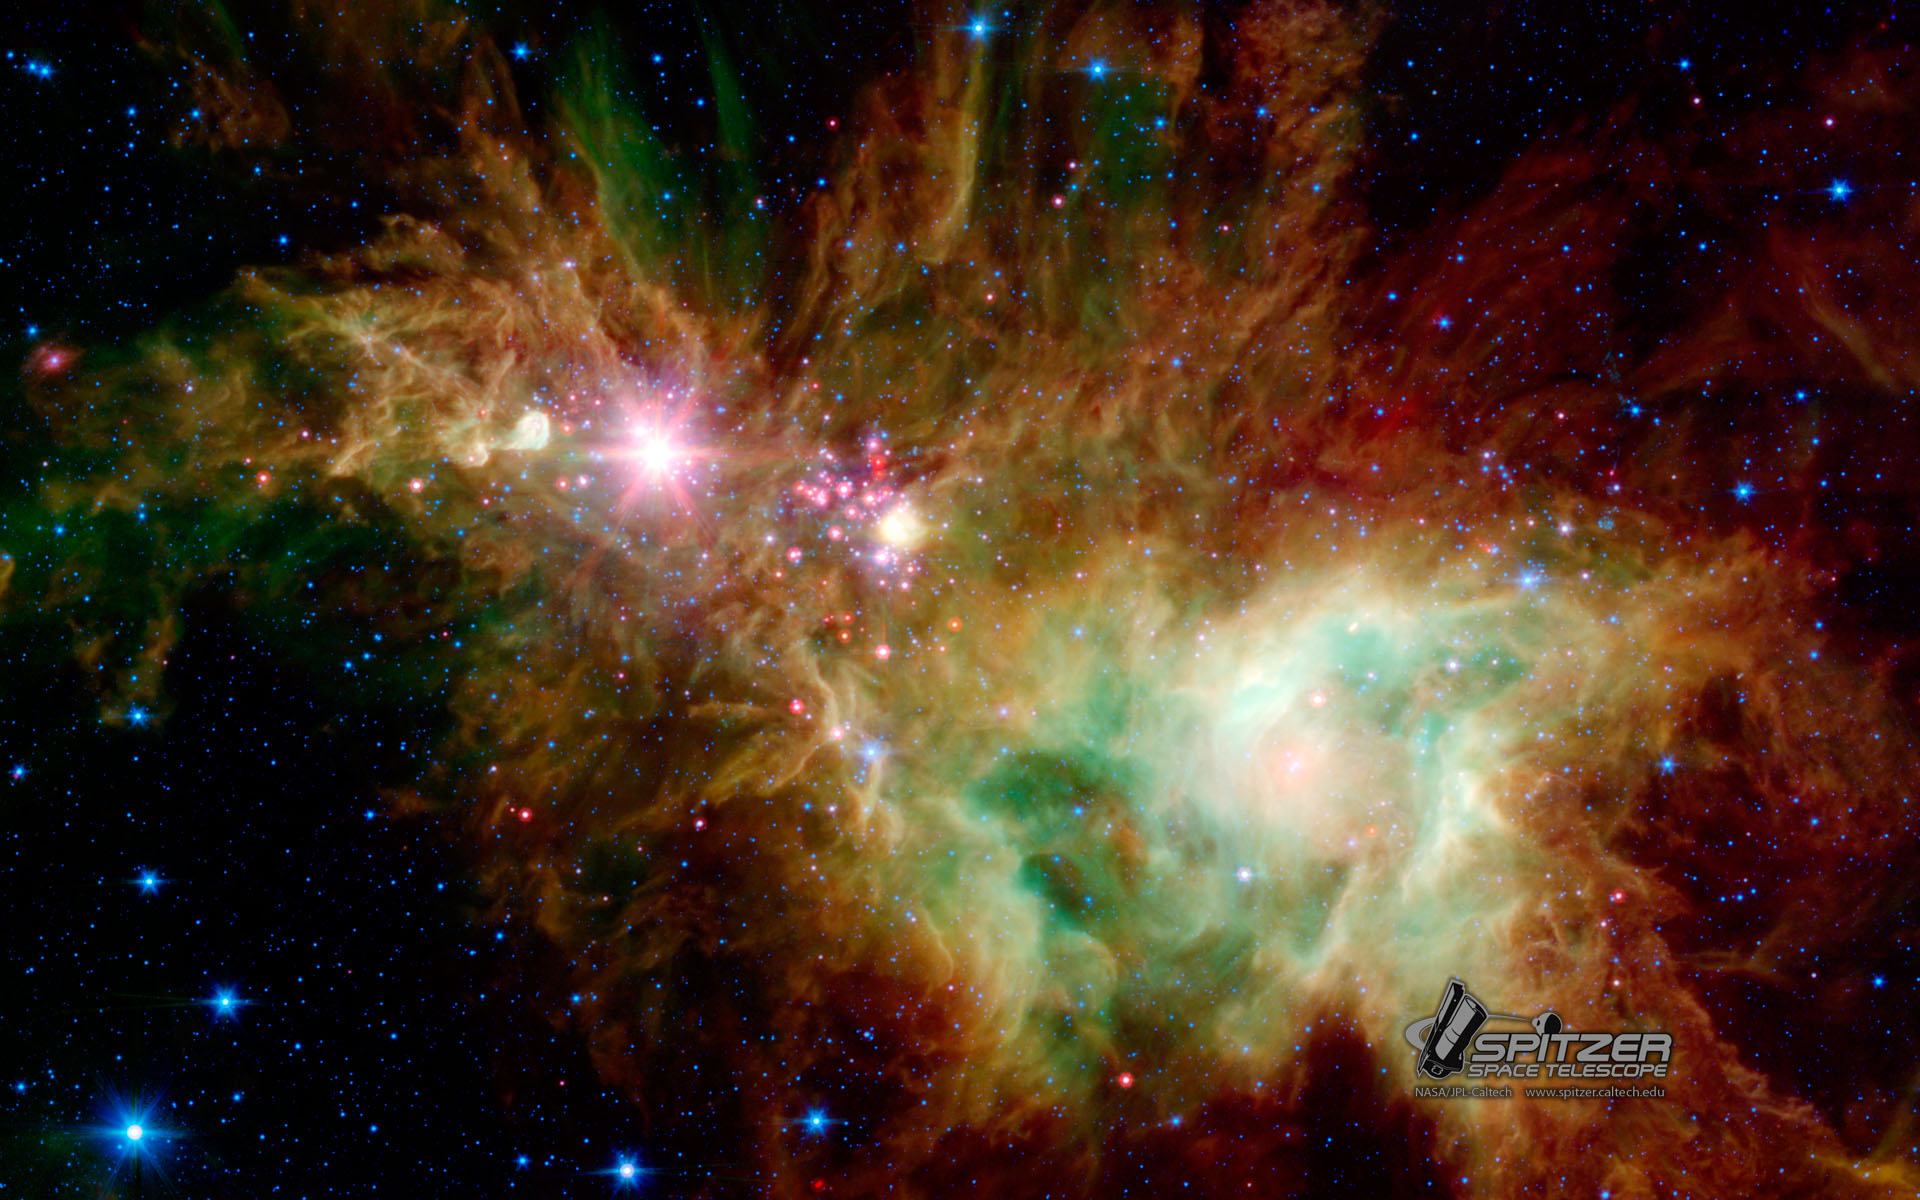 Incredible photos from NASAs Spitzer Space Telescope